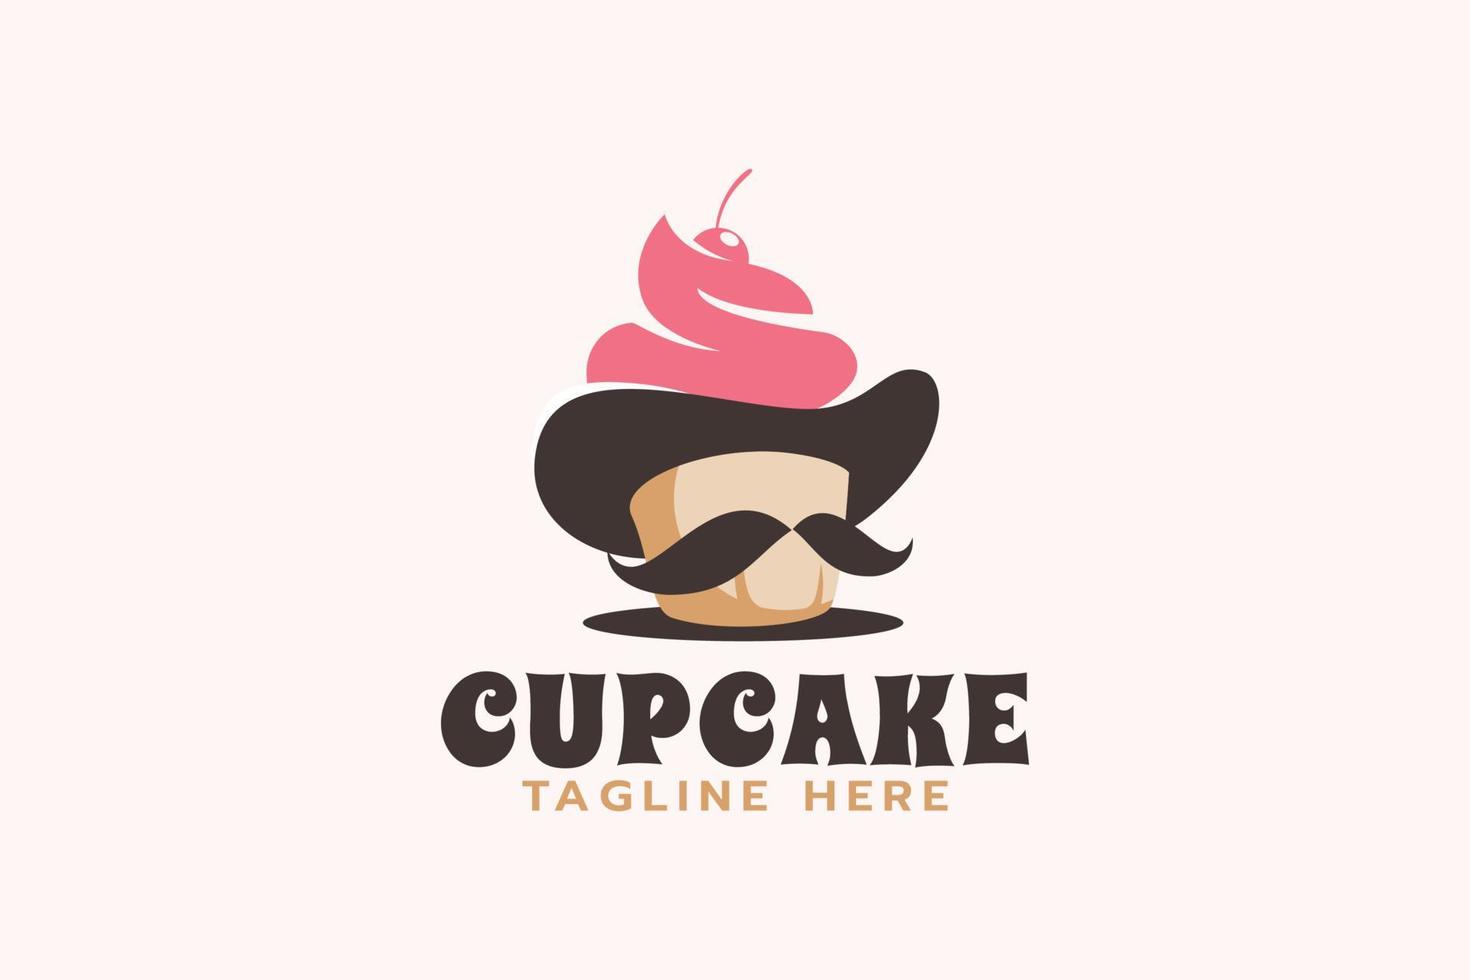 Herr. Cupcake-Logo mit einer Kombination aus Hut, Schnurrbart und Cupcake. vektor